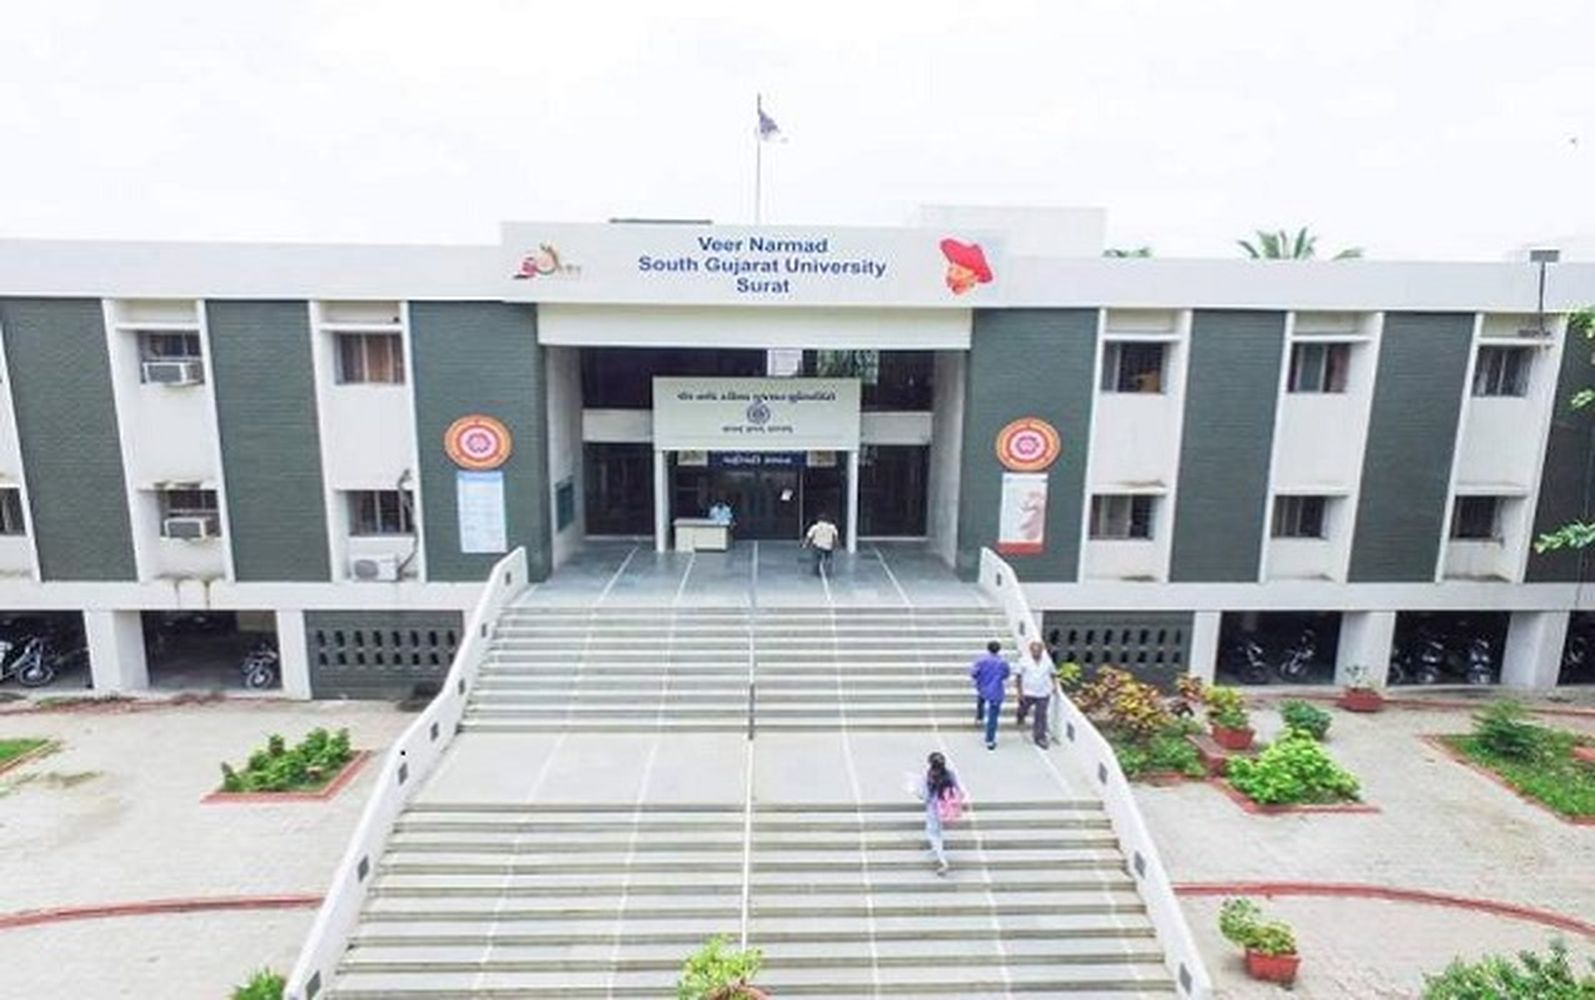 गुजरात का पहला विश्वविद्यालय जो देगा सभी विद्यार्थियों को बीमा सुविधा